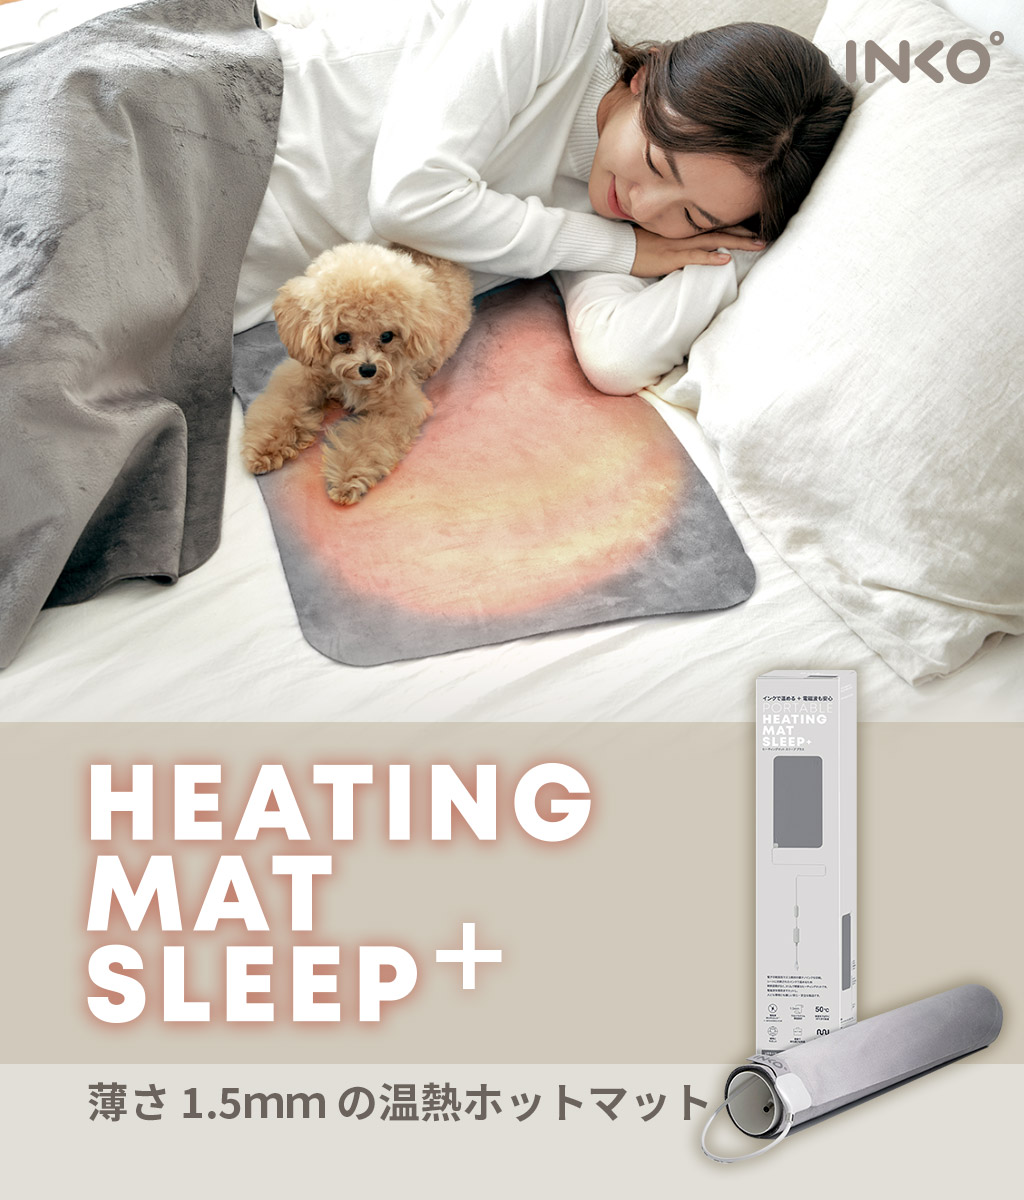 INKO Heating Mat Sleep+ – 【公式サイト】INKO ヒーター